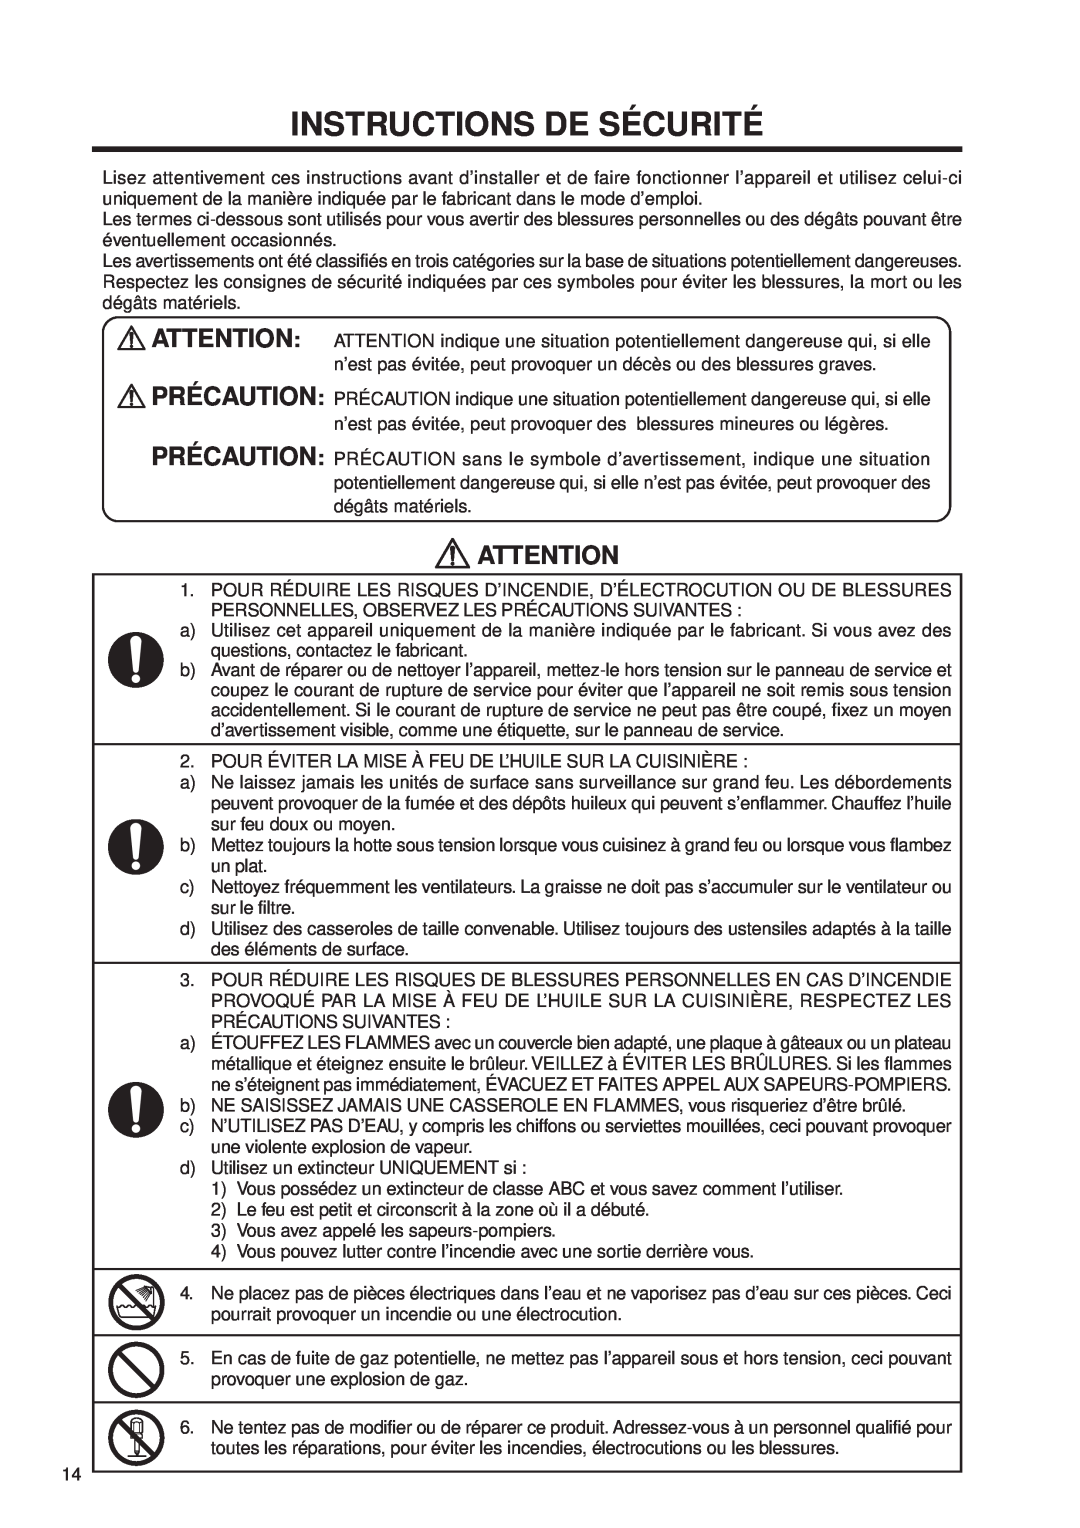 Fujioh FDR-4200D operation manual Instructions De Sécurité 